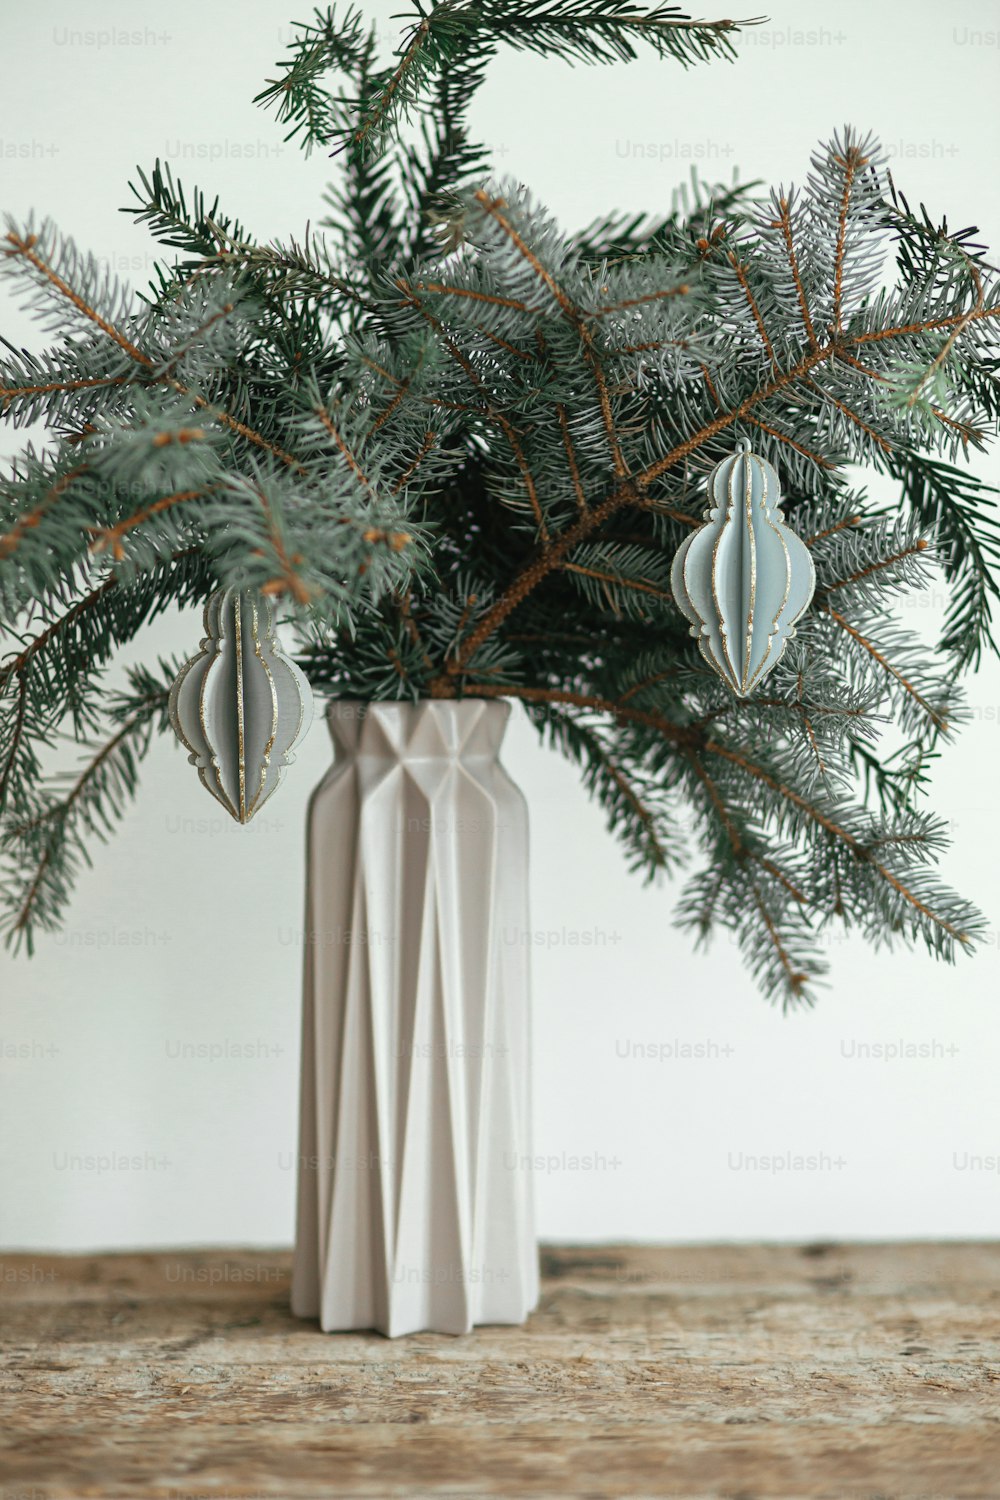 Stilvoller Weihnachtsschmuck auf Tannenzweig in moderner Vase Nahaufnahme. Moderne Holzkugel auf Ast auf weißem Hintergrund. Festliche einfache und kreative Einrichtung im skandinavischen Zimmer. Frohe Weihnachten!